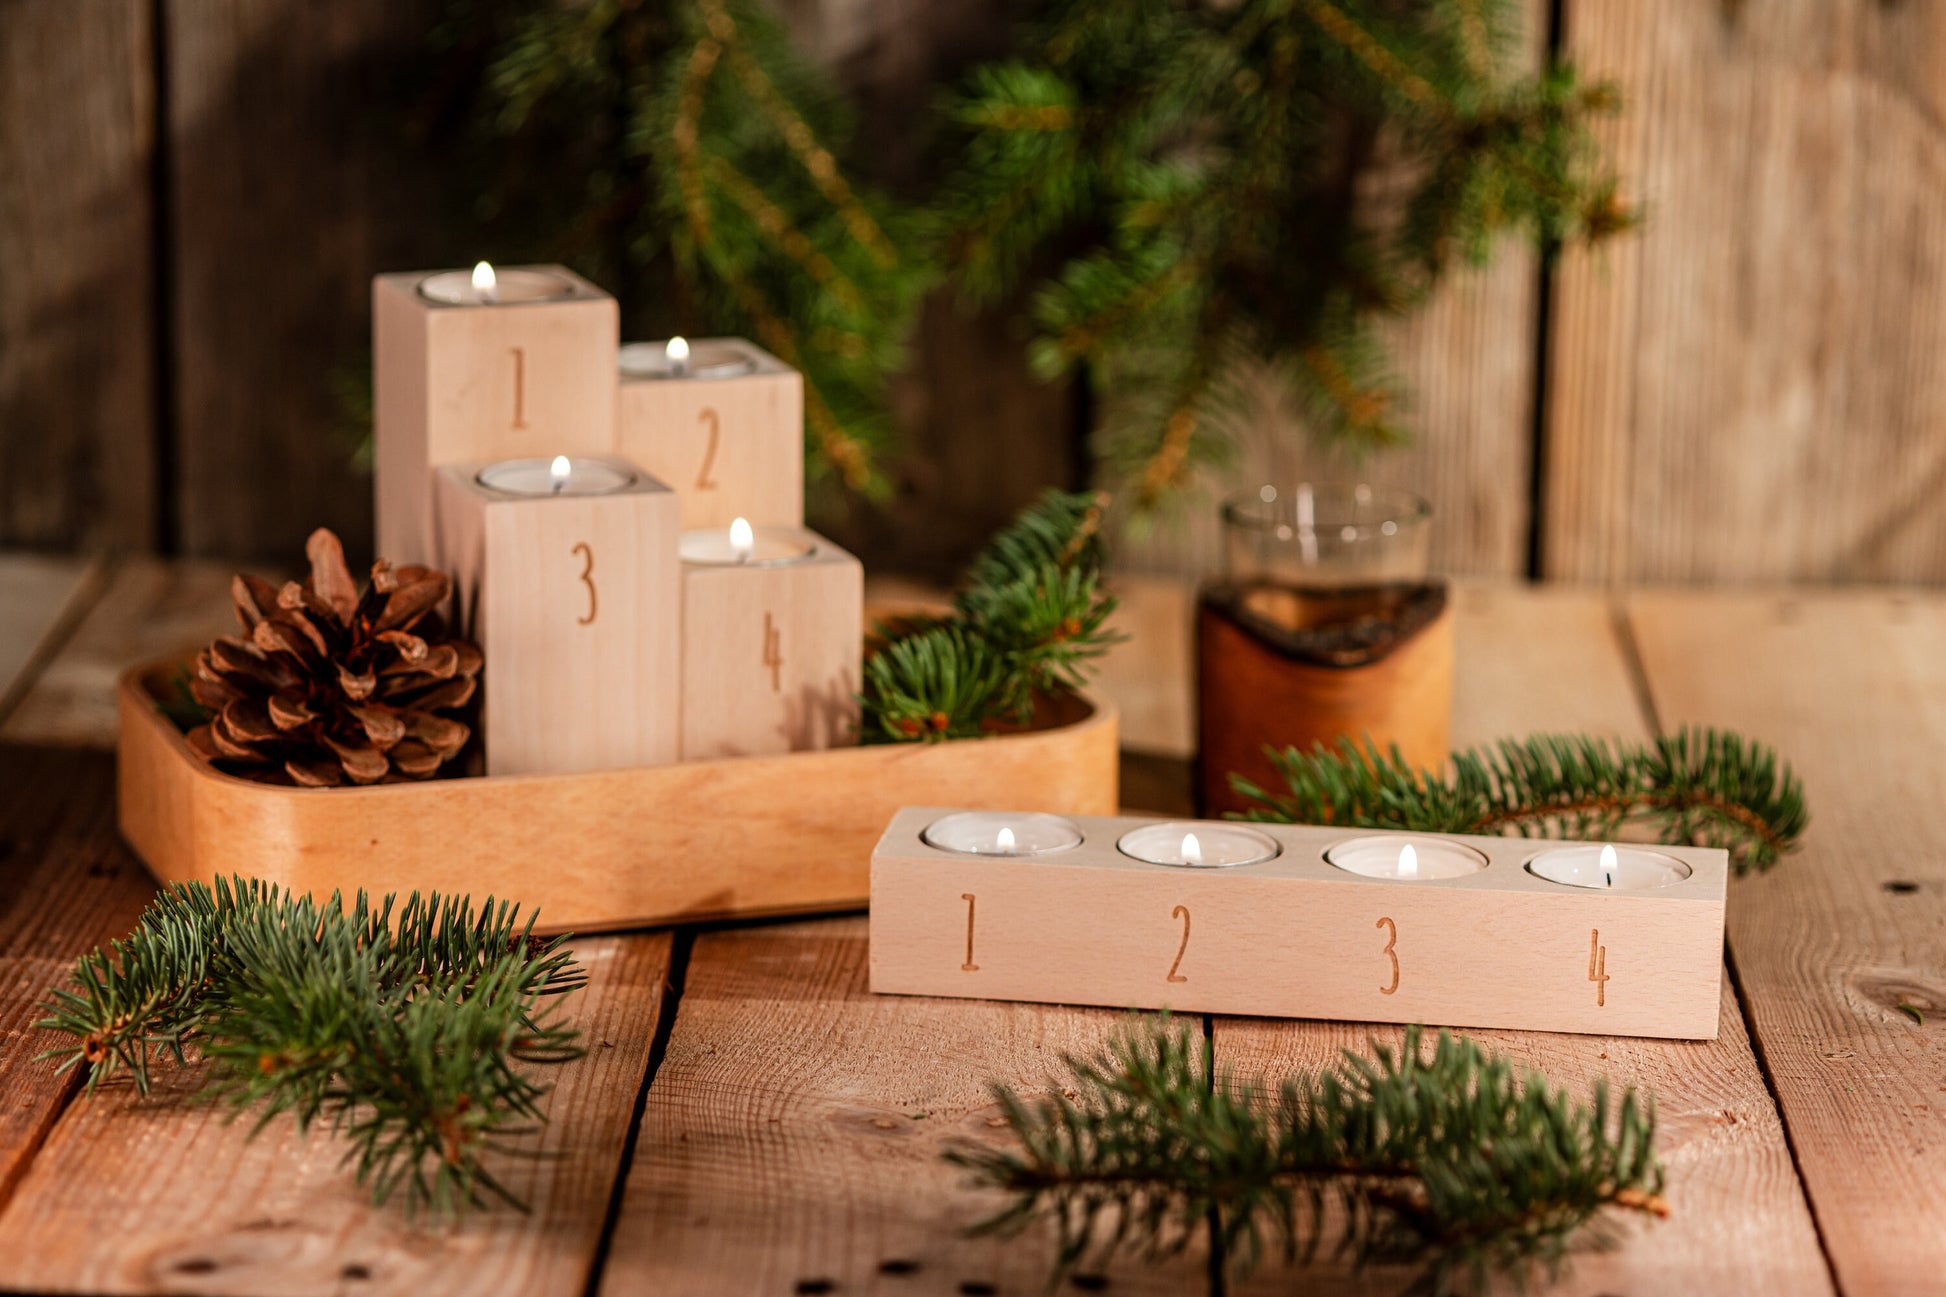 Schlichter Teelichthalter aus Holz, Kerzenhalter Nordic Style, Teelichthalter graviert, Kerzenständer Buchenholz, Adventskranz, Kerzenhalter